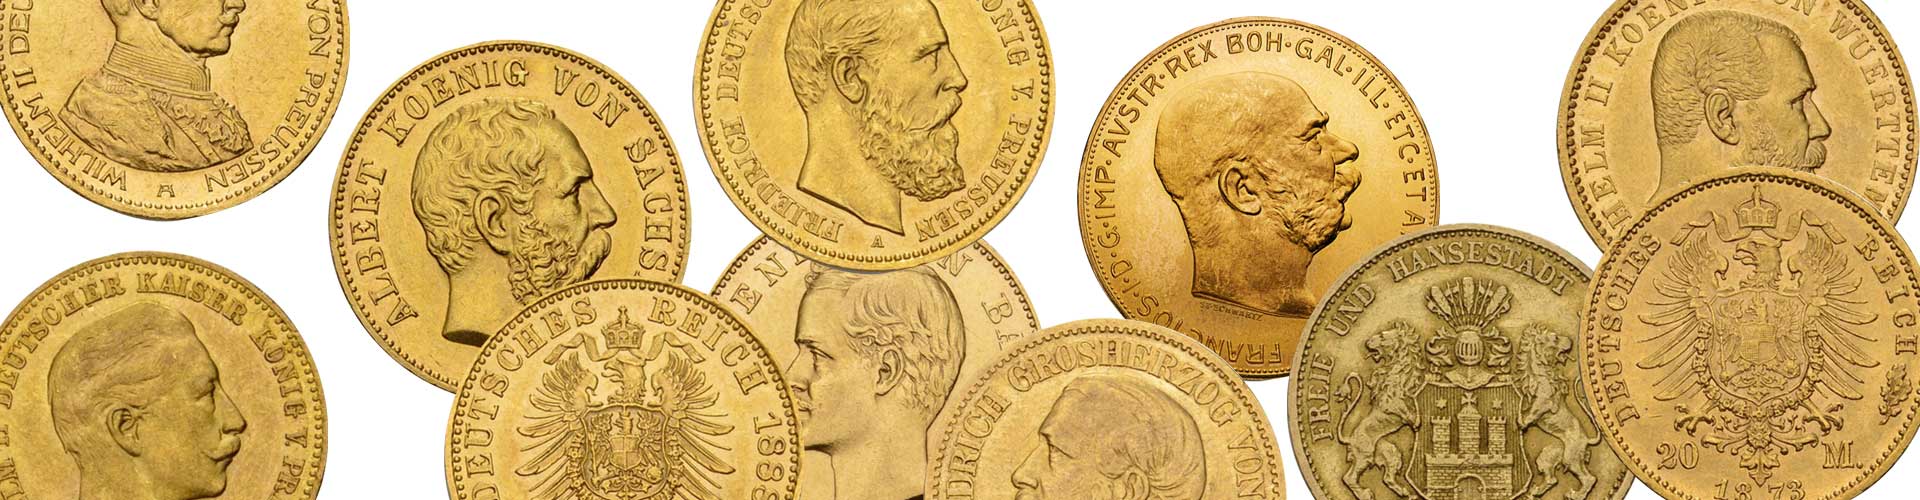 Verschiedene Goldmünzen unter anderem aus dem deutschen Kaiserreich